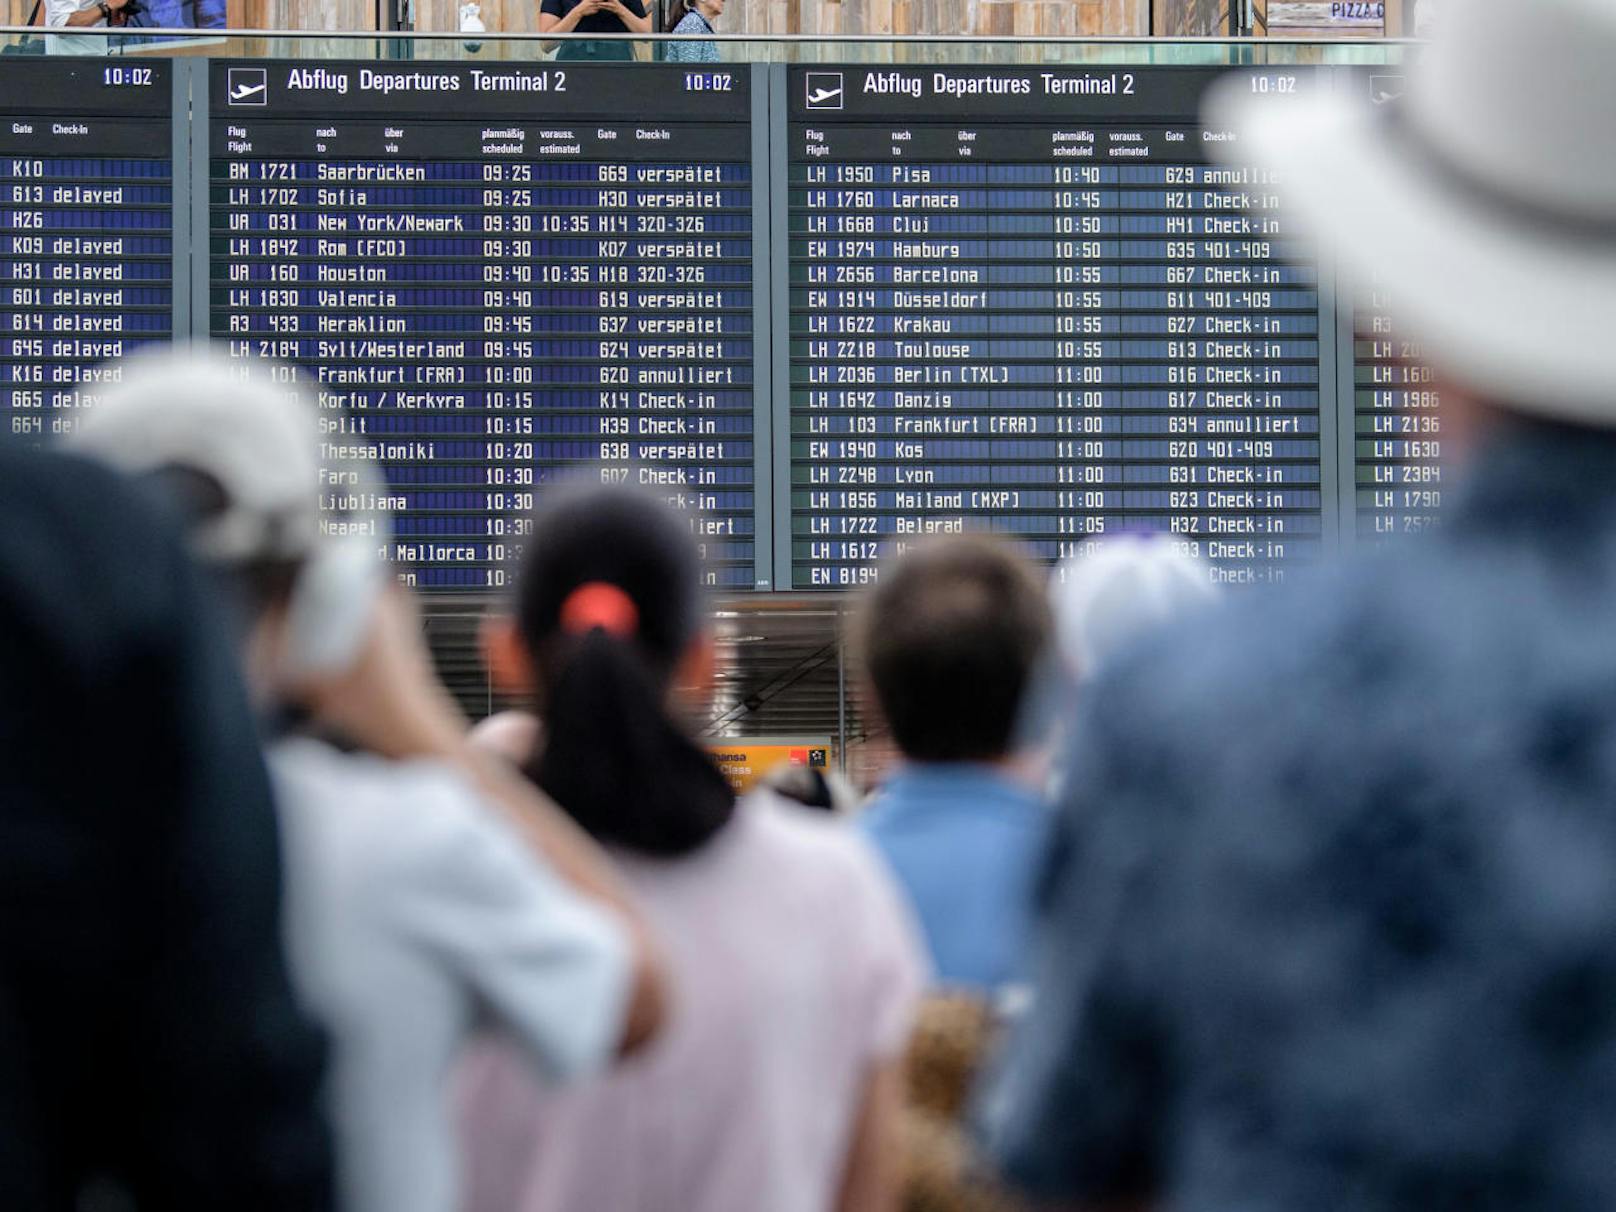 Zahlreiche Fluggäste warten am 28. Juli 2018 am Flughafen in München auf ihre Flüge. Wegen eines Polizeieinsatzes ist die Sicherheitszone im Terminal 2 vorübergehend gesperrt worden. <a href="https://www.heute.at/welt/news/story/Unkontrollierte-Person-Terminal-2-Flughafen-Muenchen-Polizeieinsatz-Verzoegerungen-41323116" target="_blank">Hier weiterlesen >>></a>